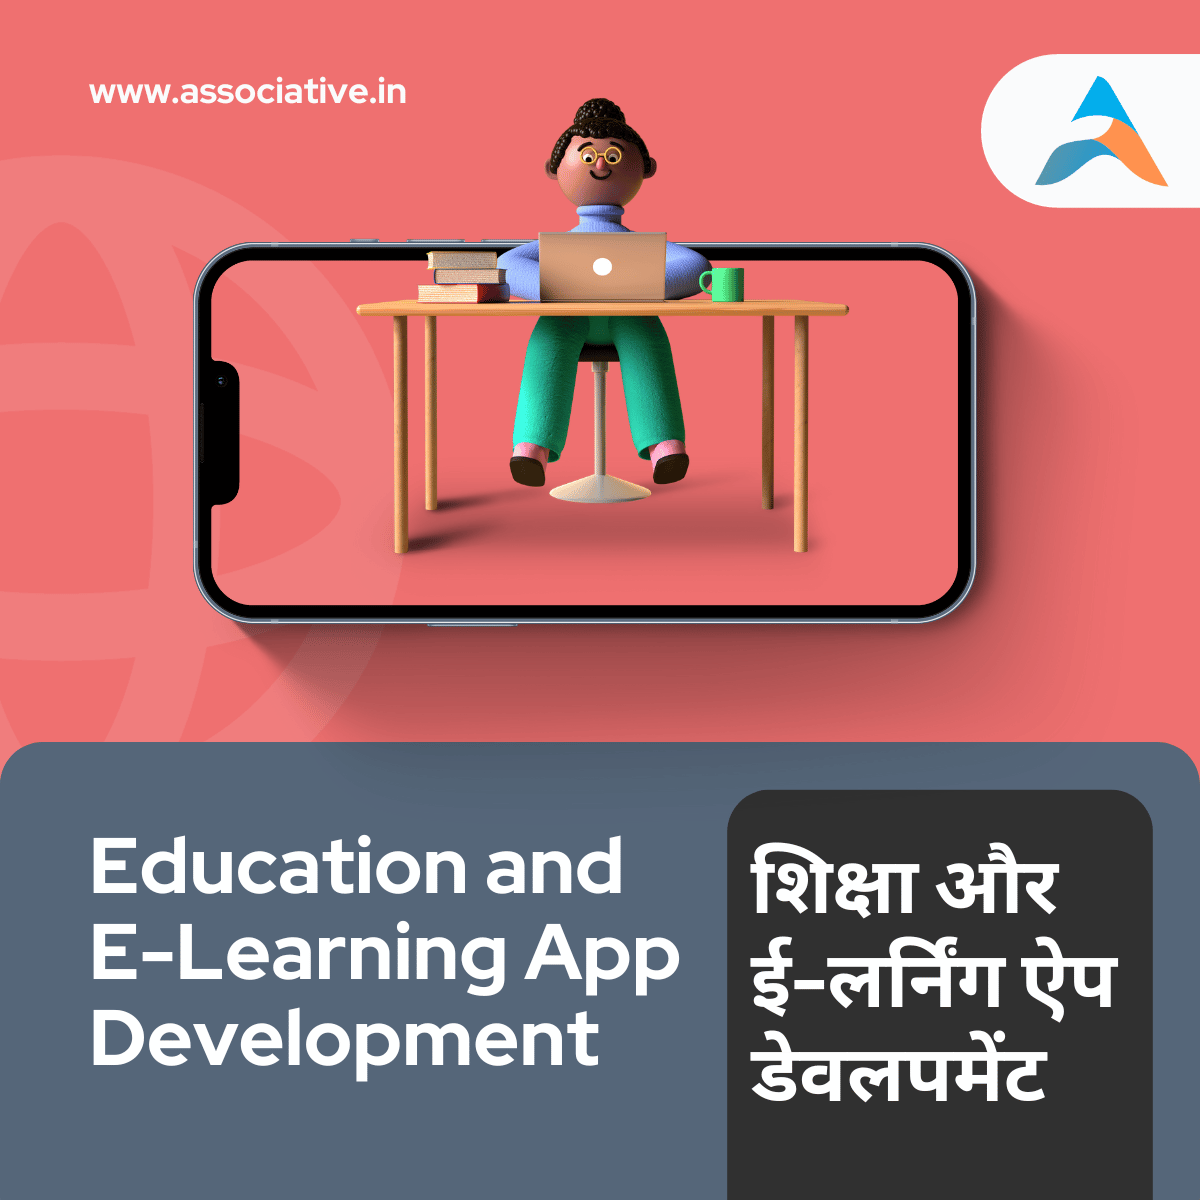 Education and E-Learning App Development शिक्षा और ई-लर्निंग ऐप डेवलपमेंट